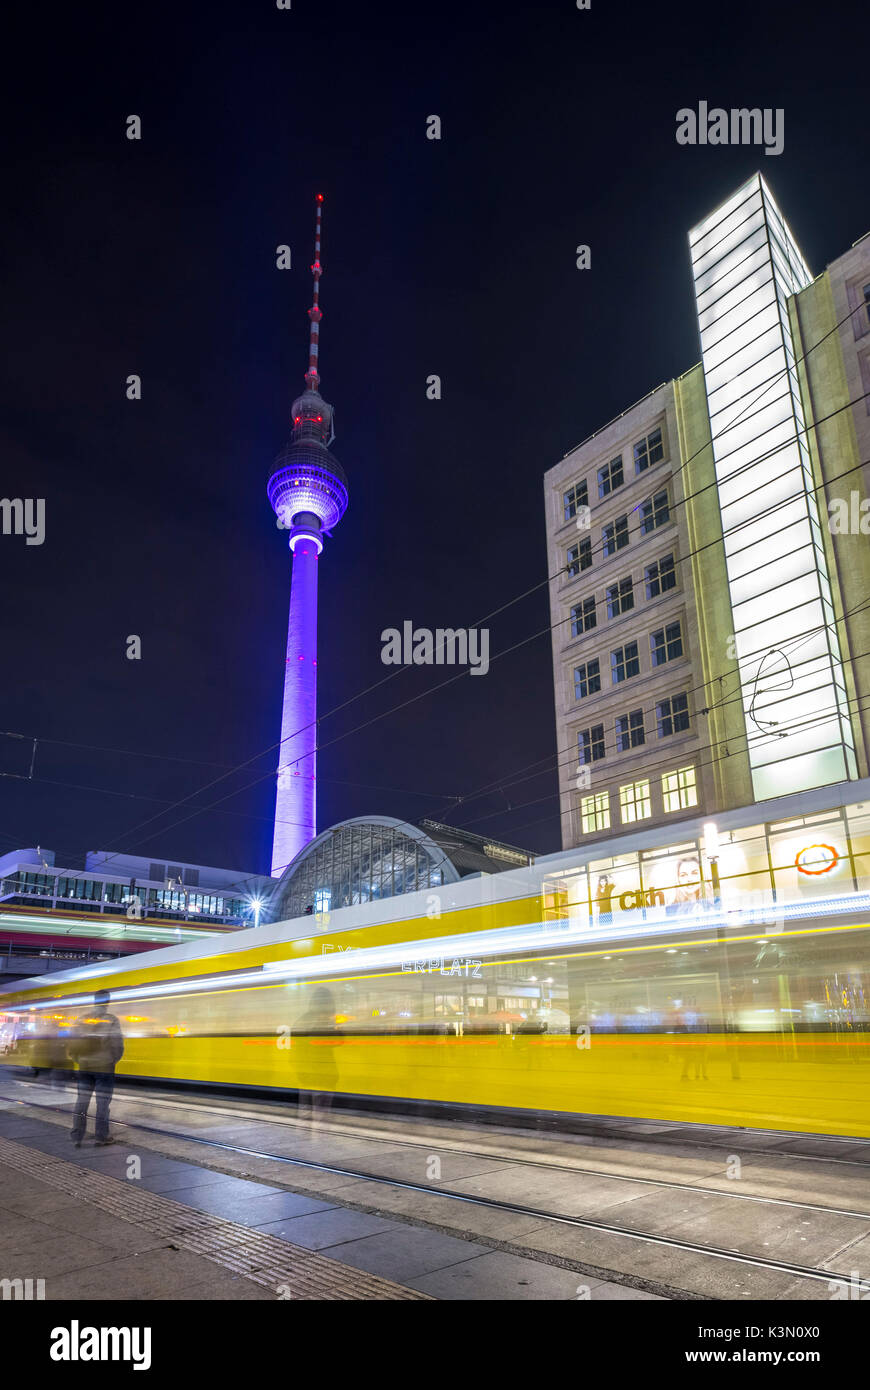 Una lunga esposizione nei pressi di Alexanderplatz, stazione ferroviaria e Fernsehturm nel distretto Mitte di Berlino, Germania. Foto Stock